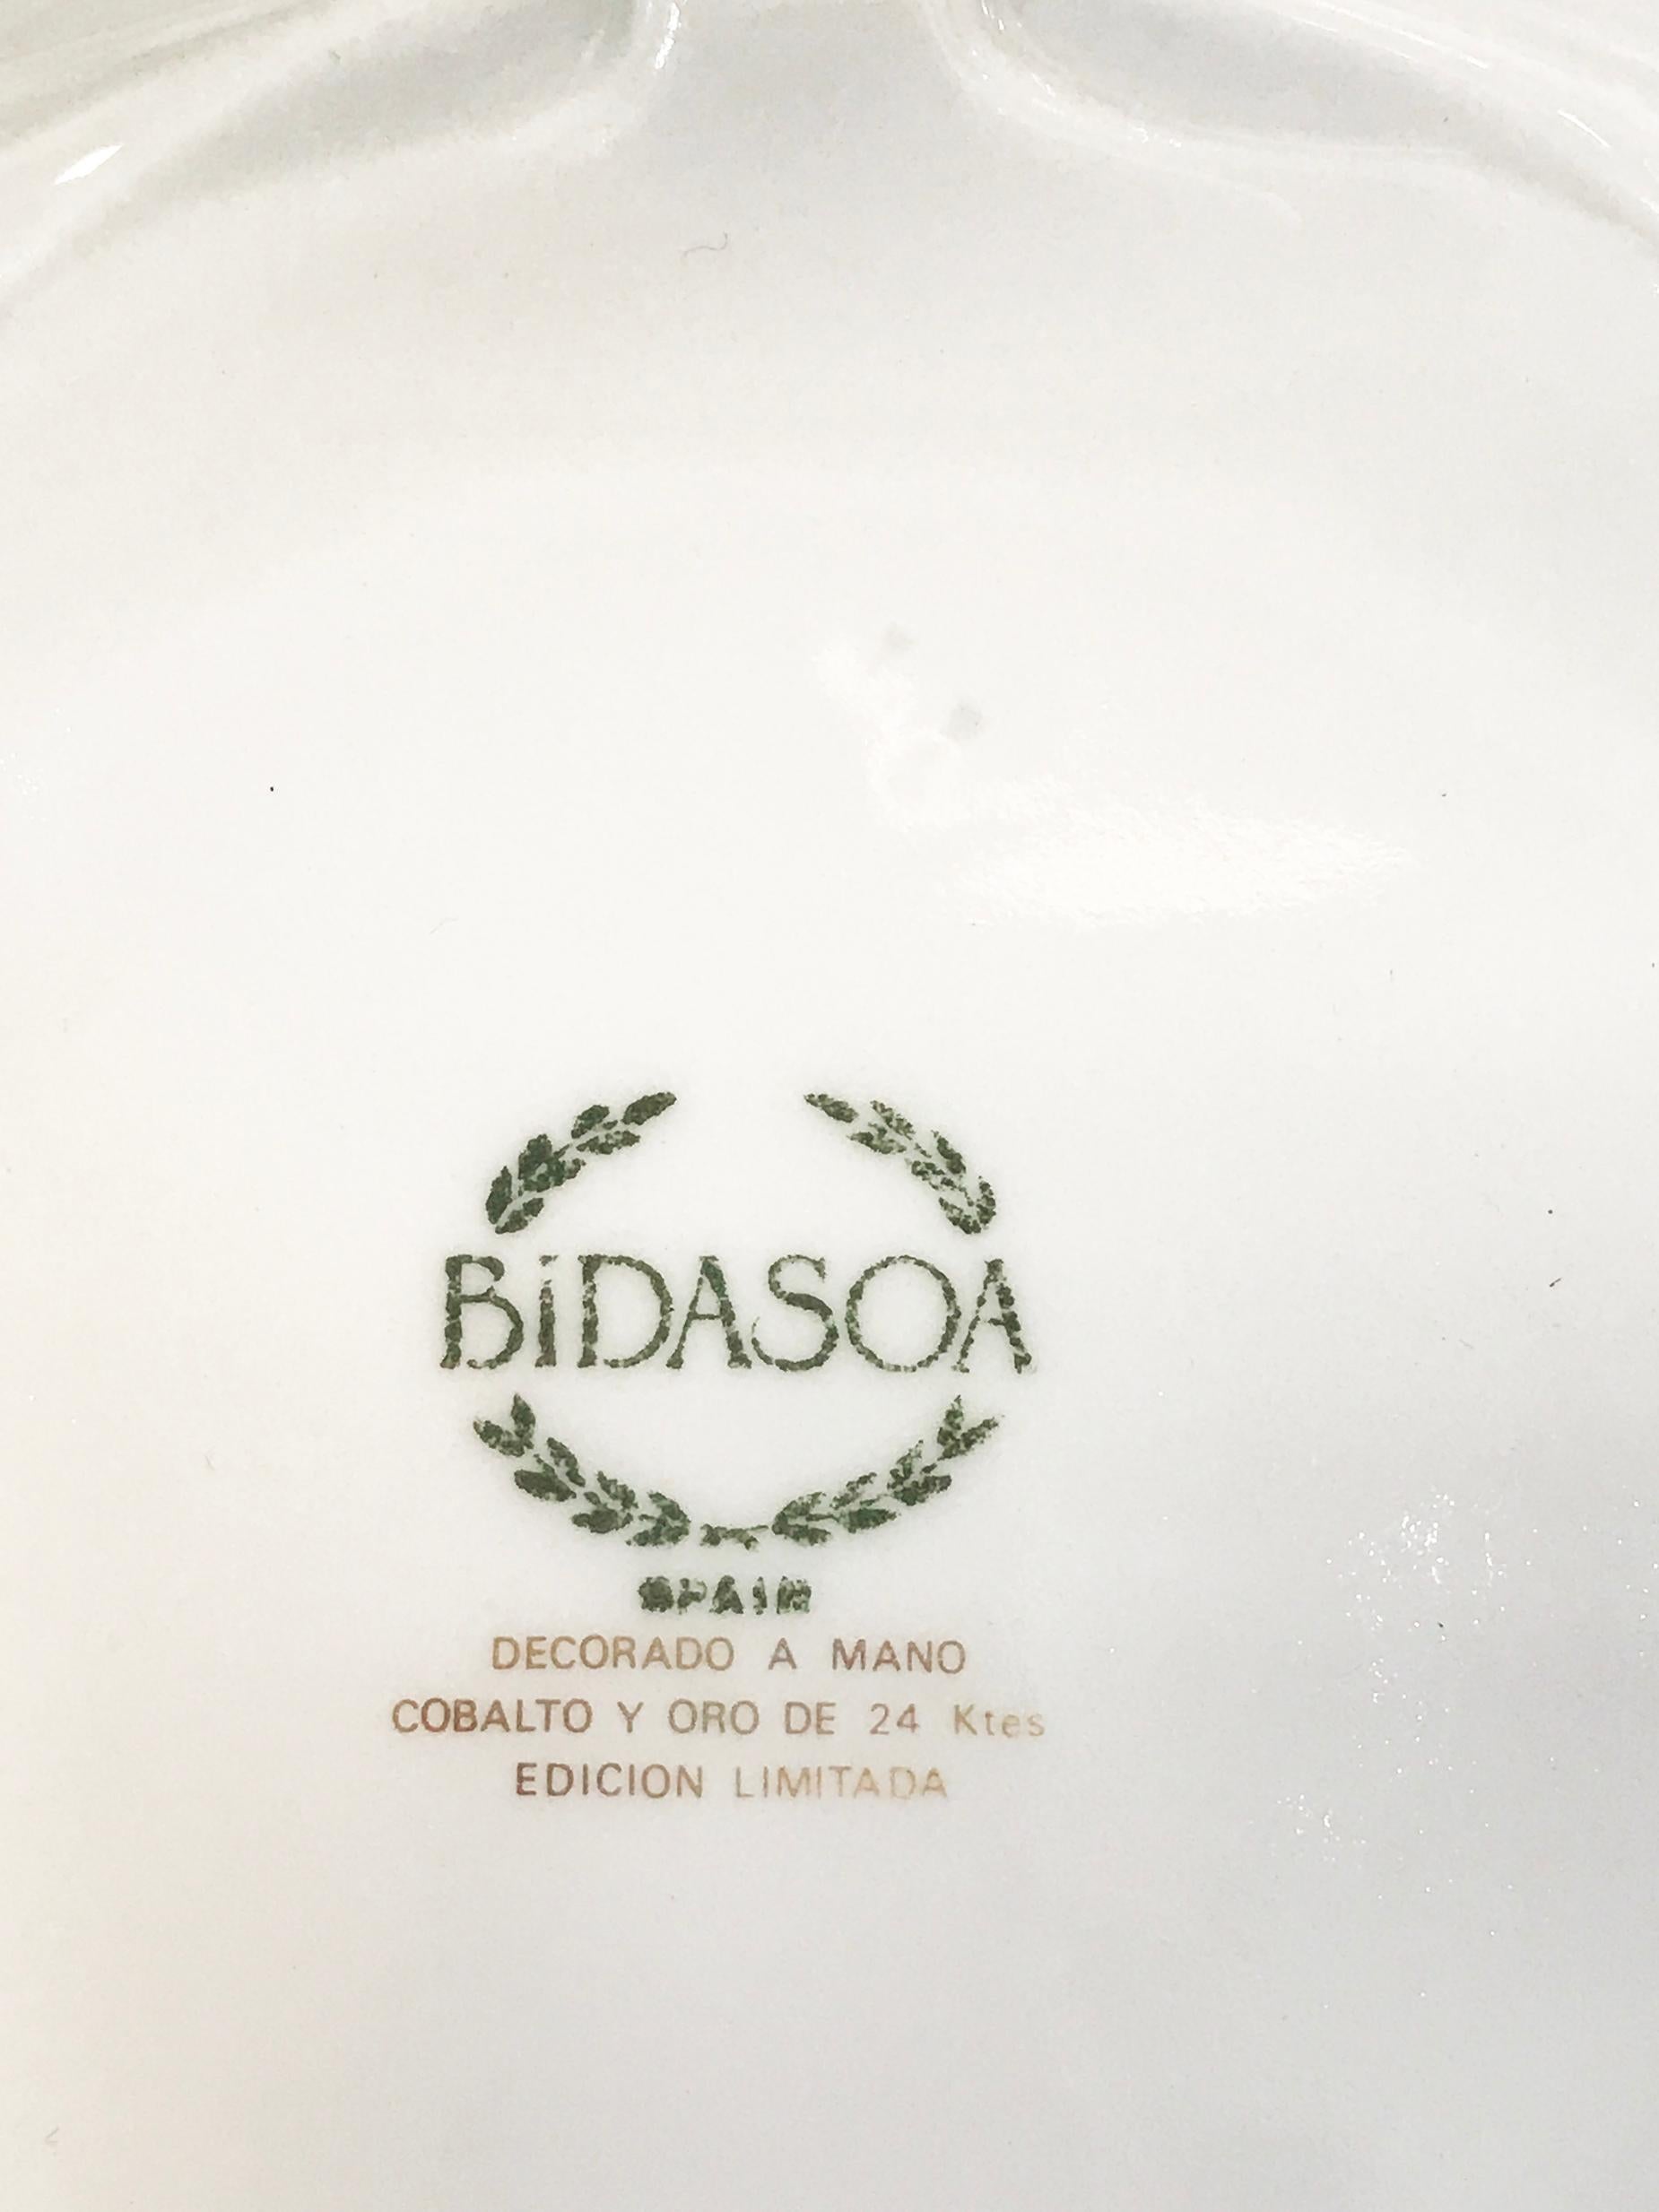 bidasoa plates